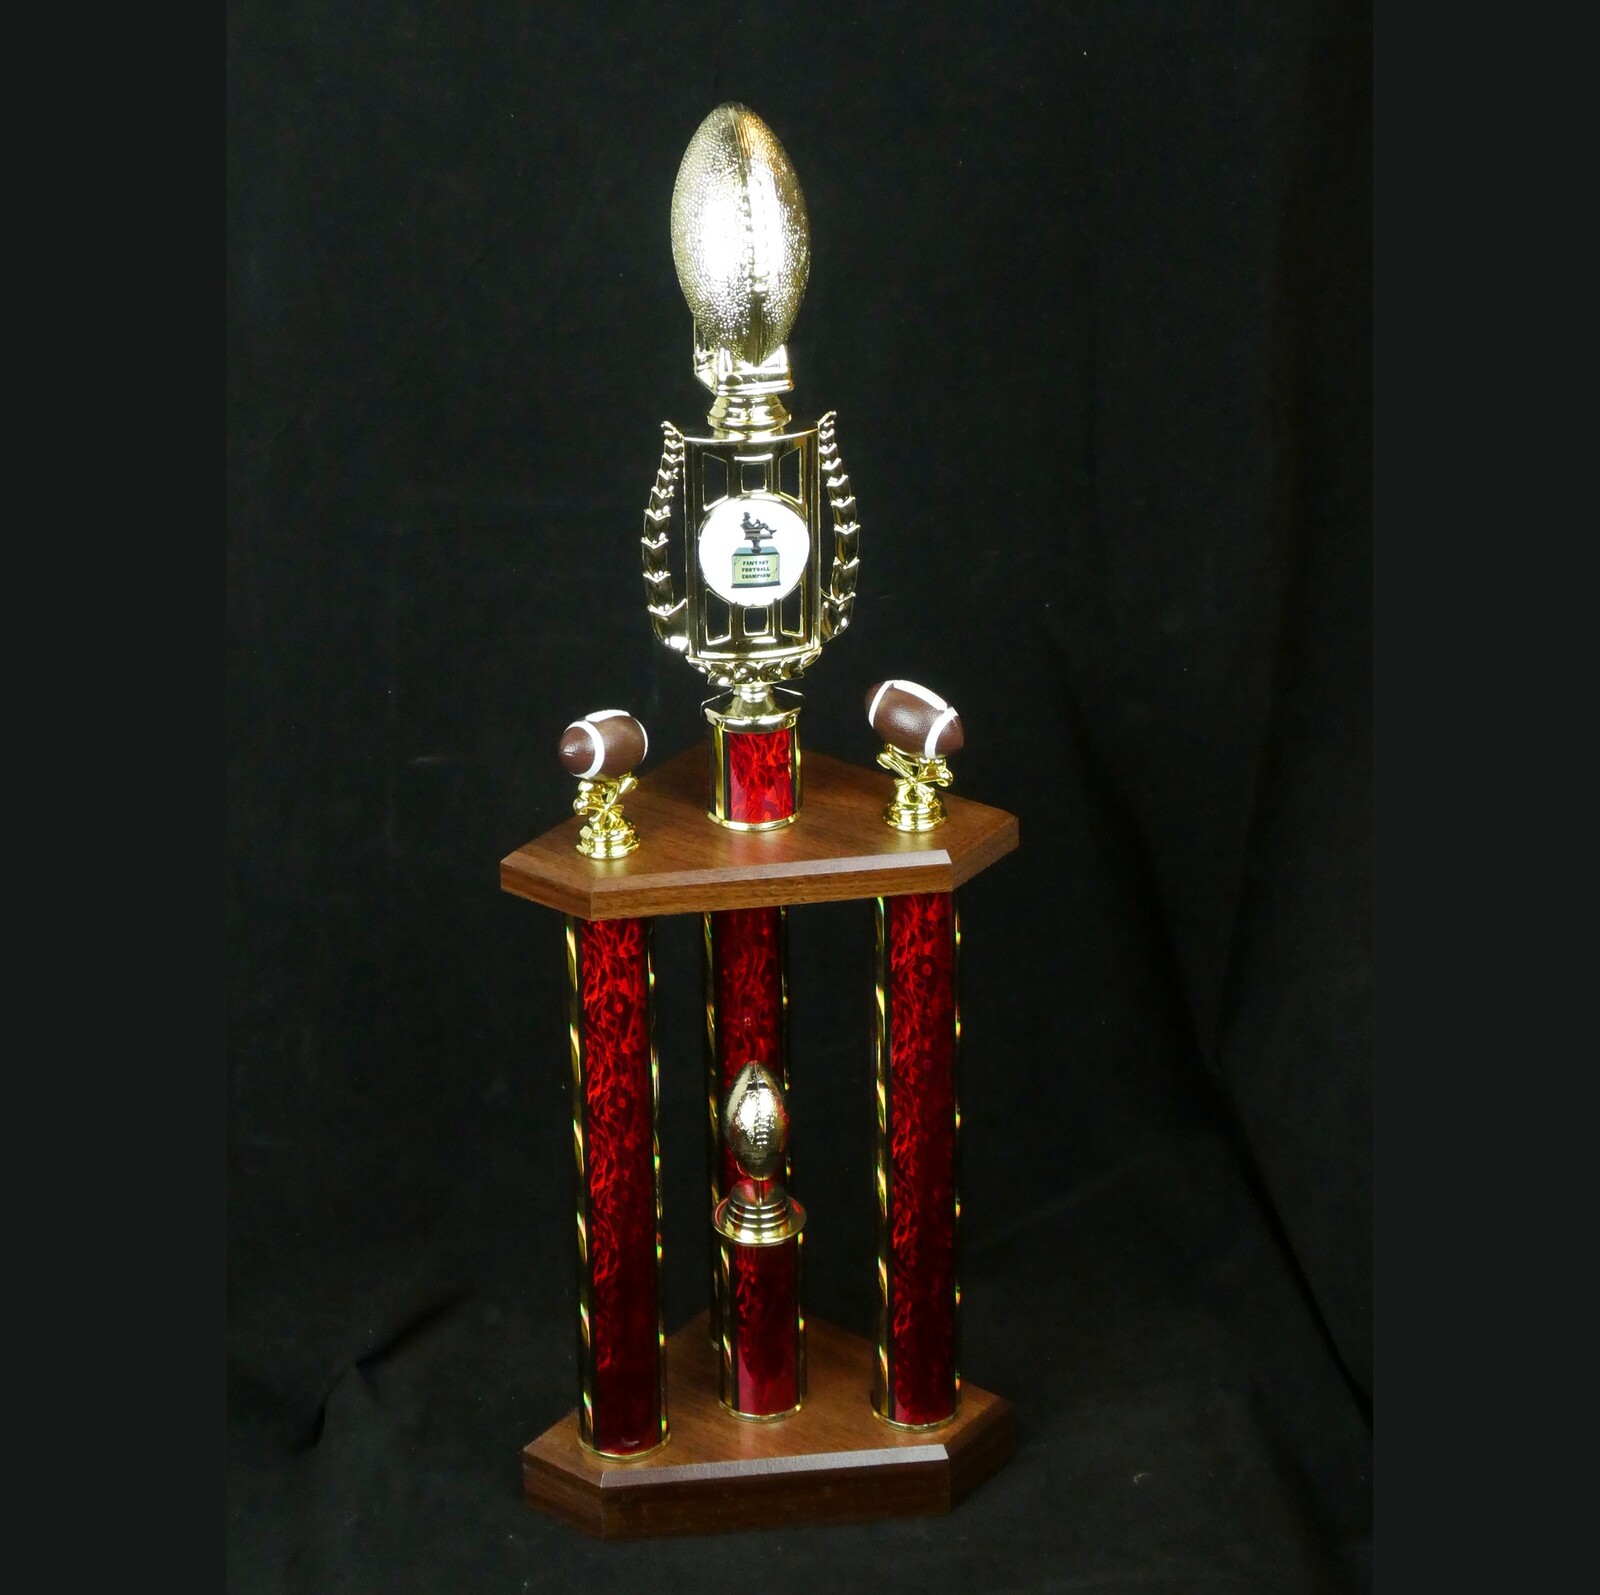 Fantasy football trophy